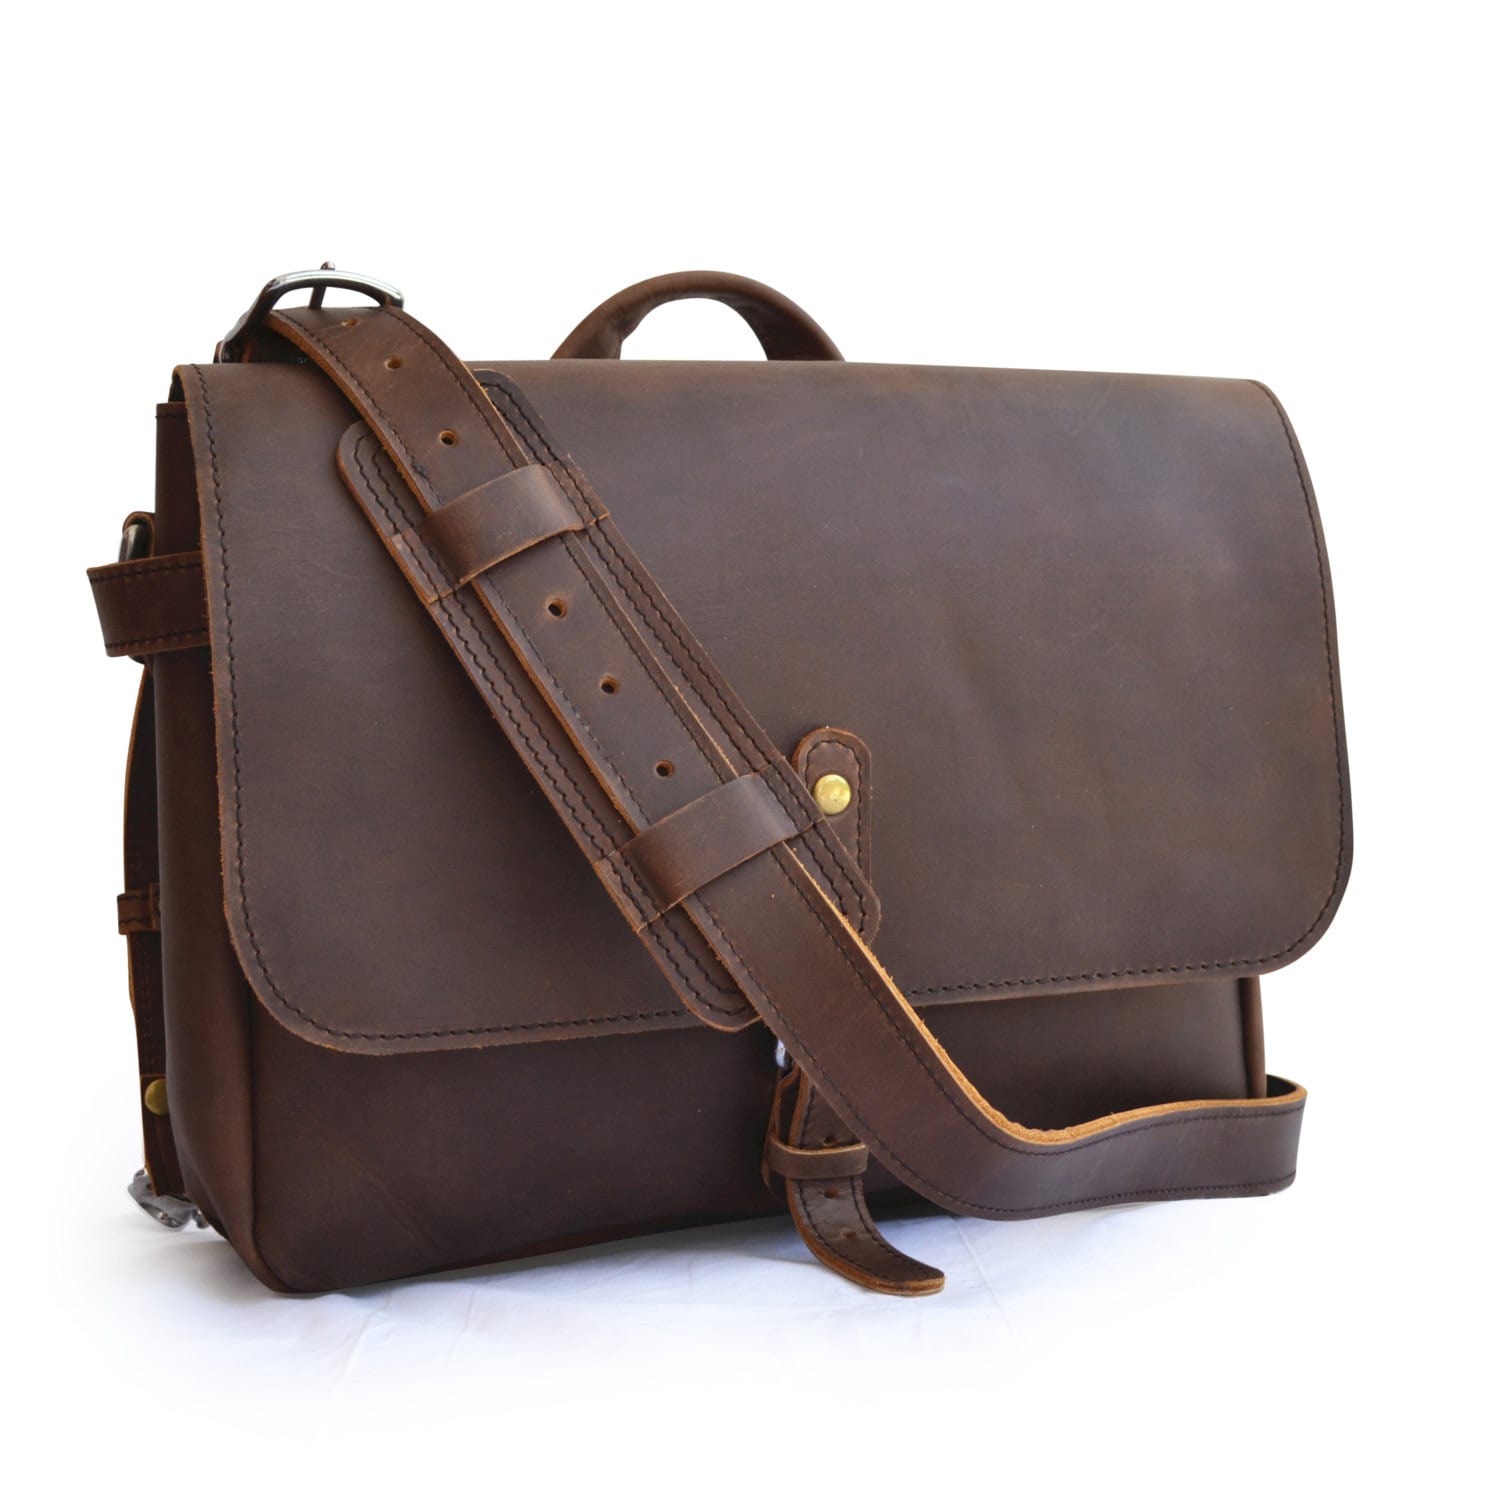 Vintage leather bag | Etsy